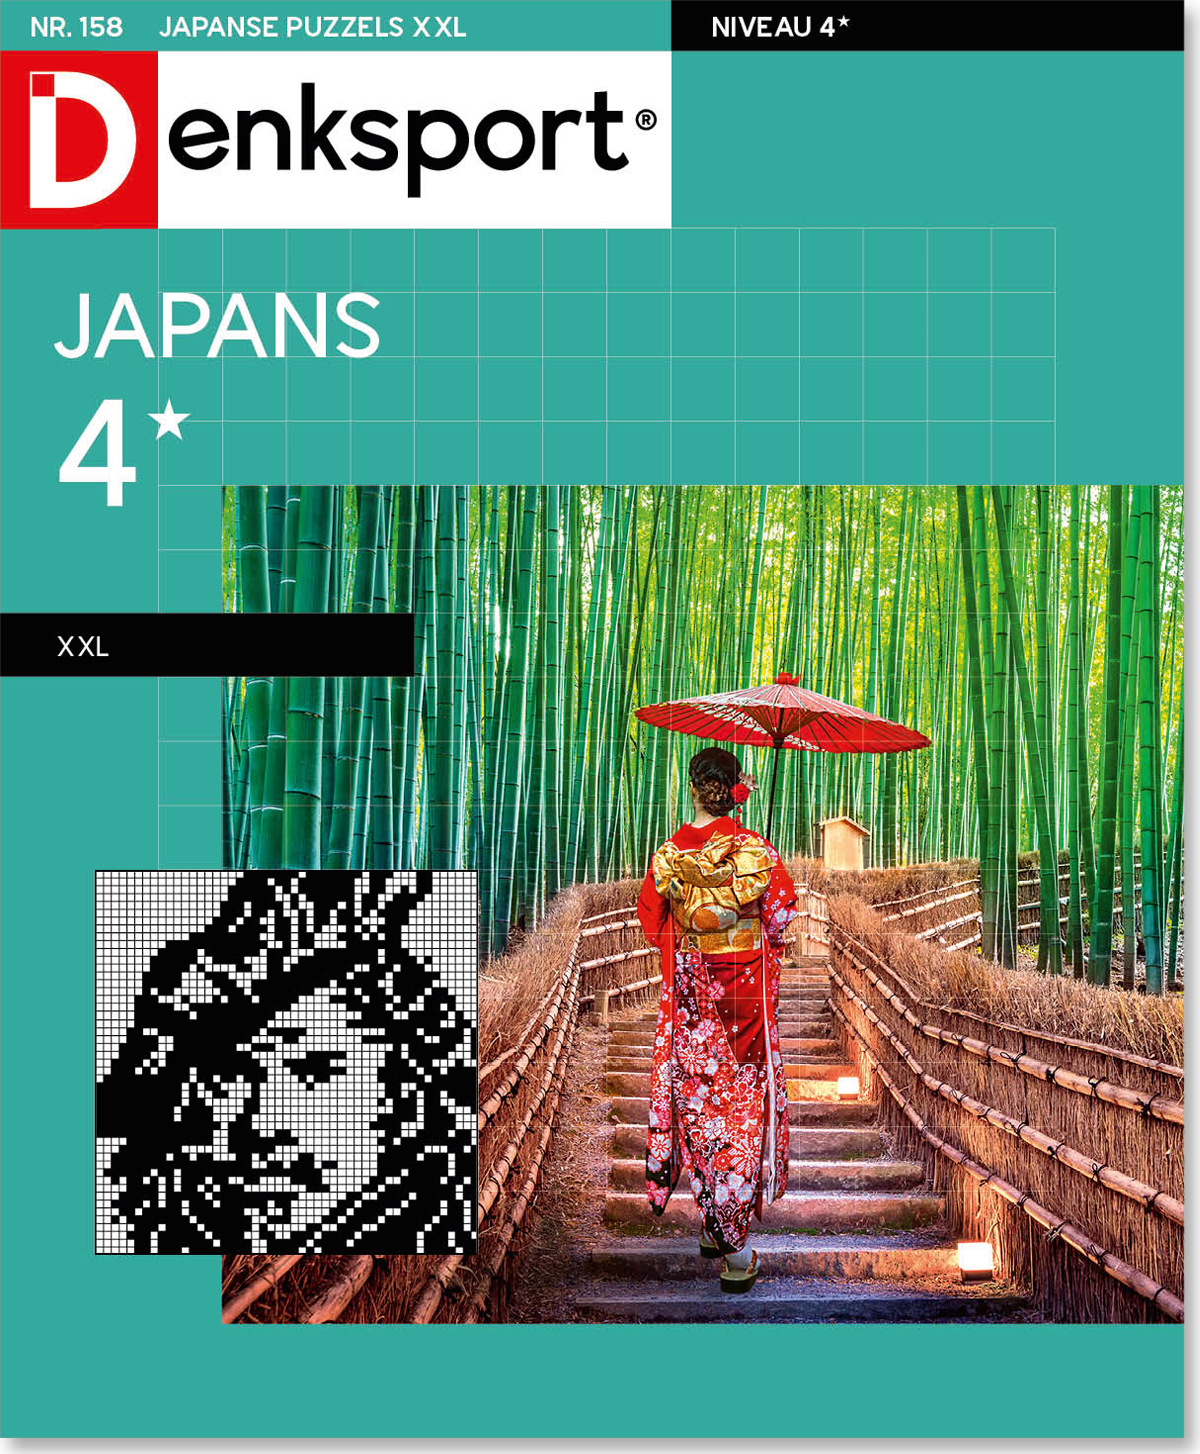 Mijnenveld Werkelijk Keer terug Japanse puzzels 4* XXL | Edition 158 | Logisch kleuren | Denksport